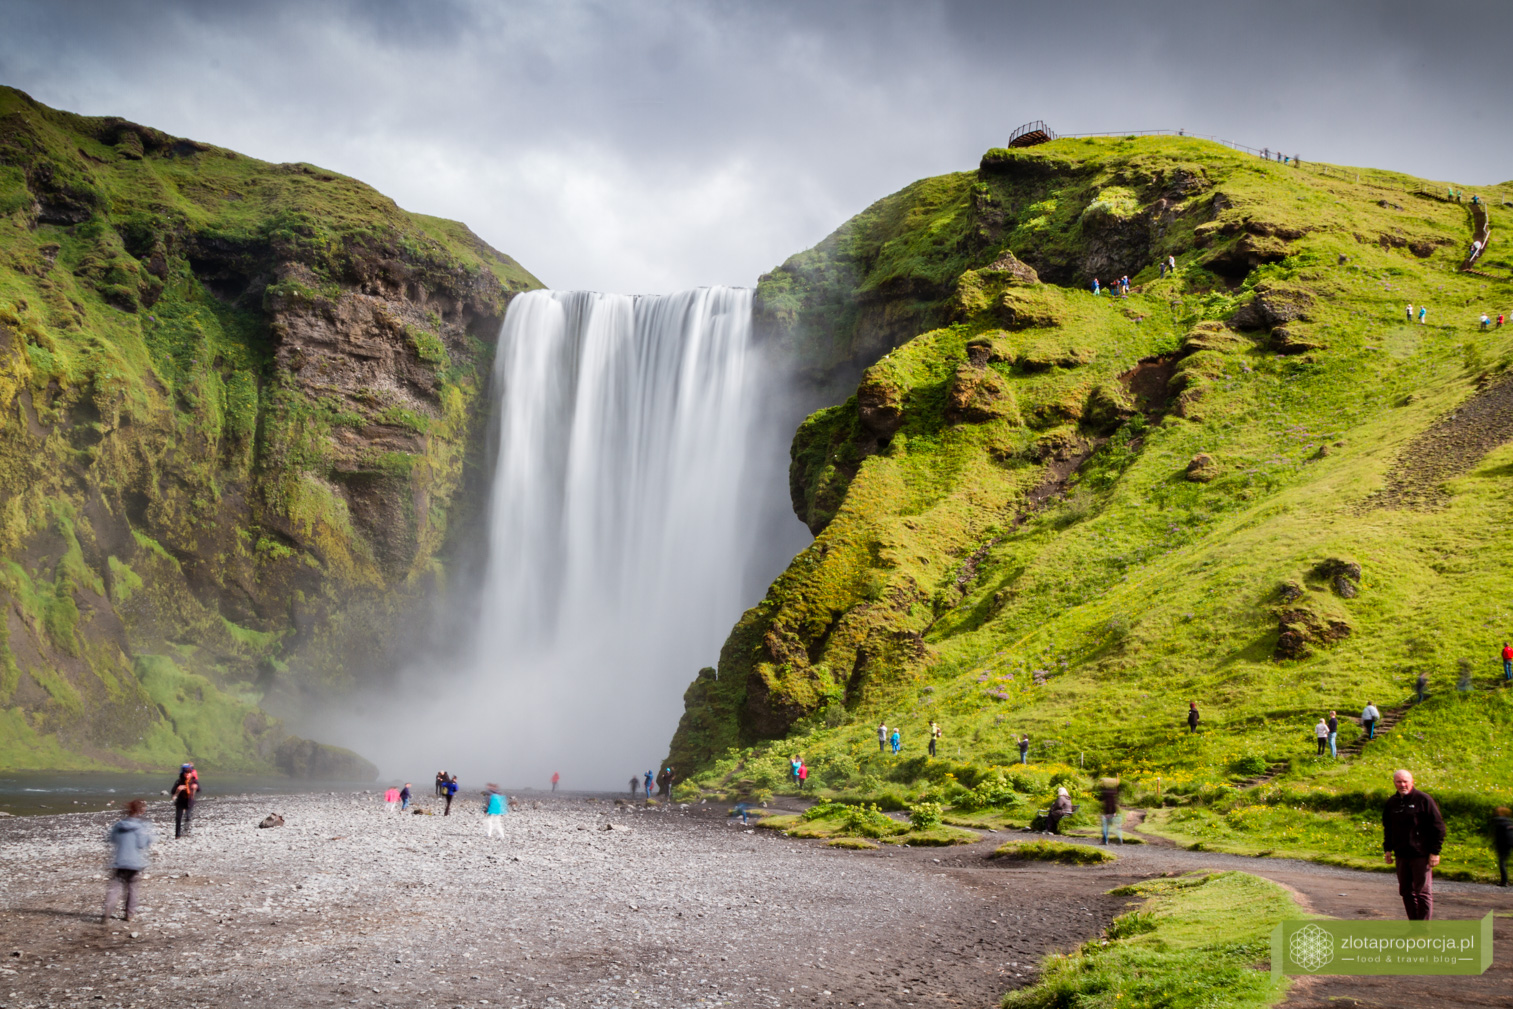 wodospad Skogafoss, Skogafoss, Południowo-zachodnia Islandia, Islandia, Islandia atrakcje, wodospady na Islandii, Islandia ciekawe miejsca